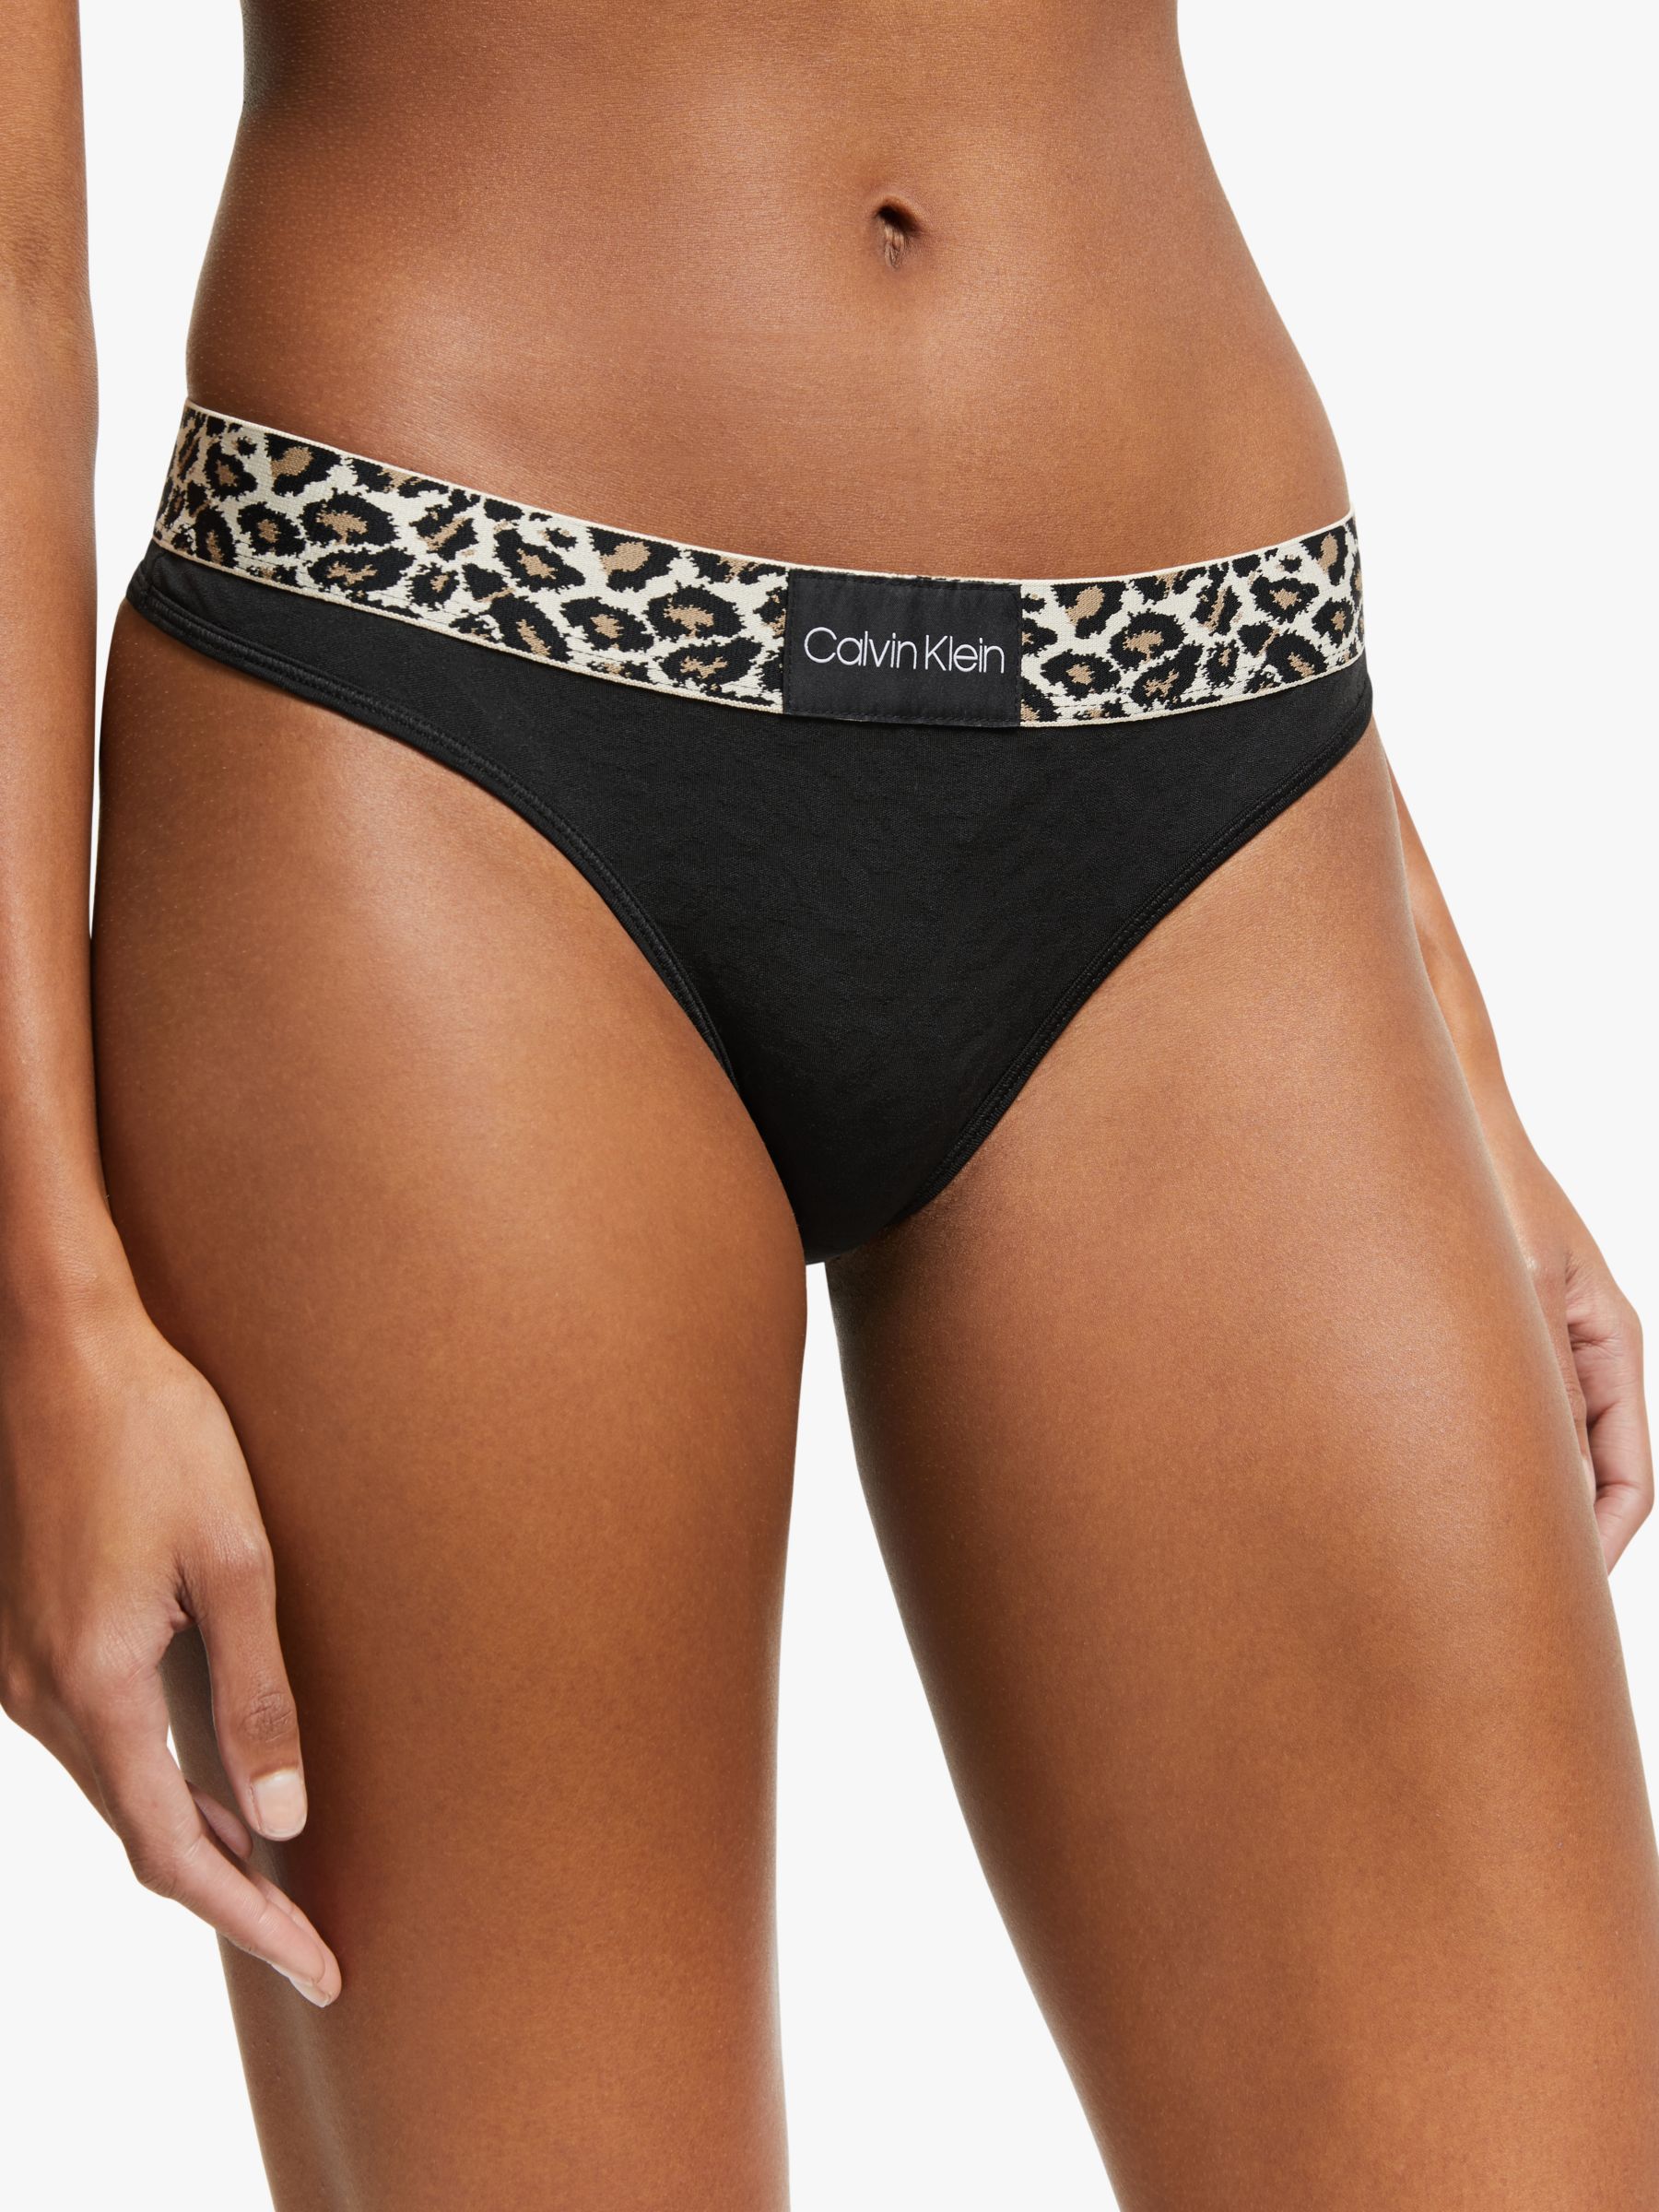 calvin klein leopard underwear